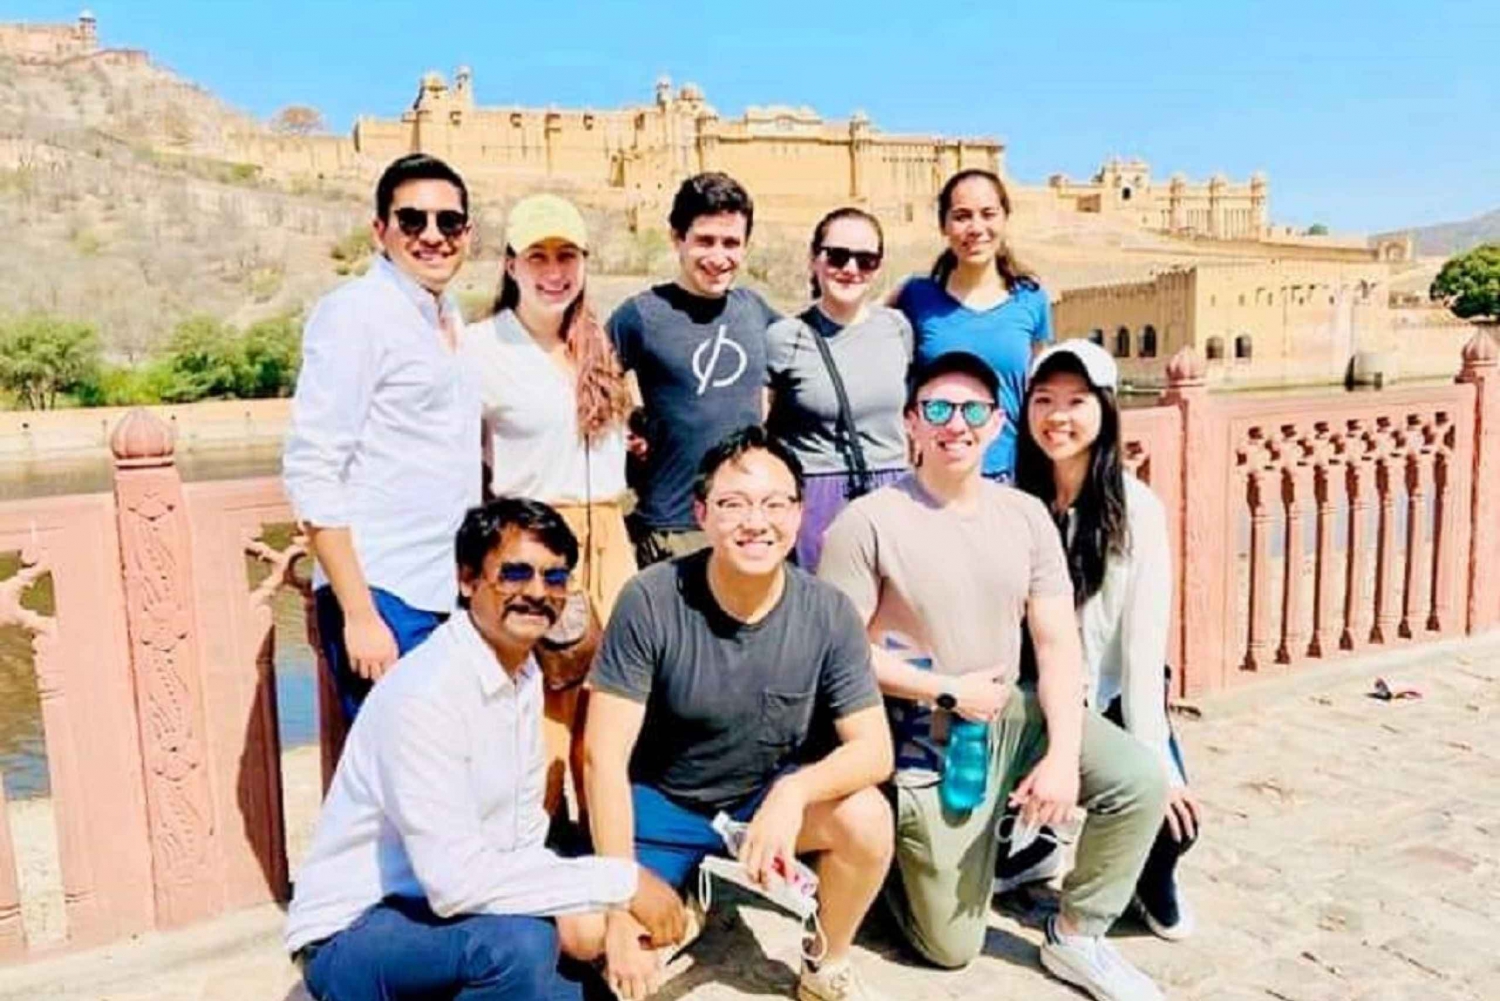 Reserva un guía turístico autorizado por el gobierno para la visita a la ciudad de Jaipur